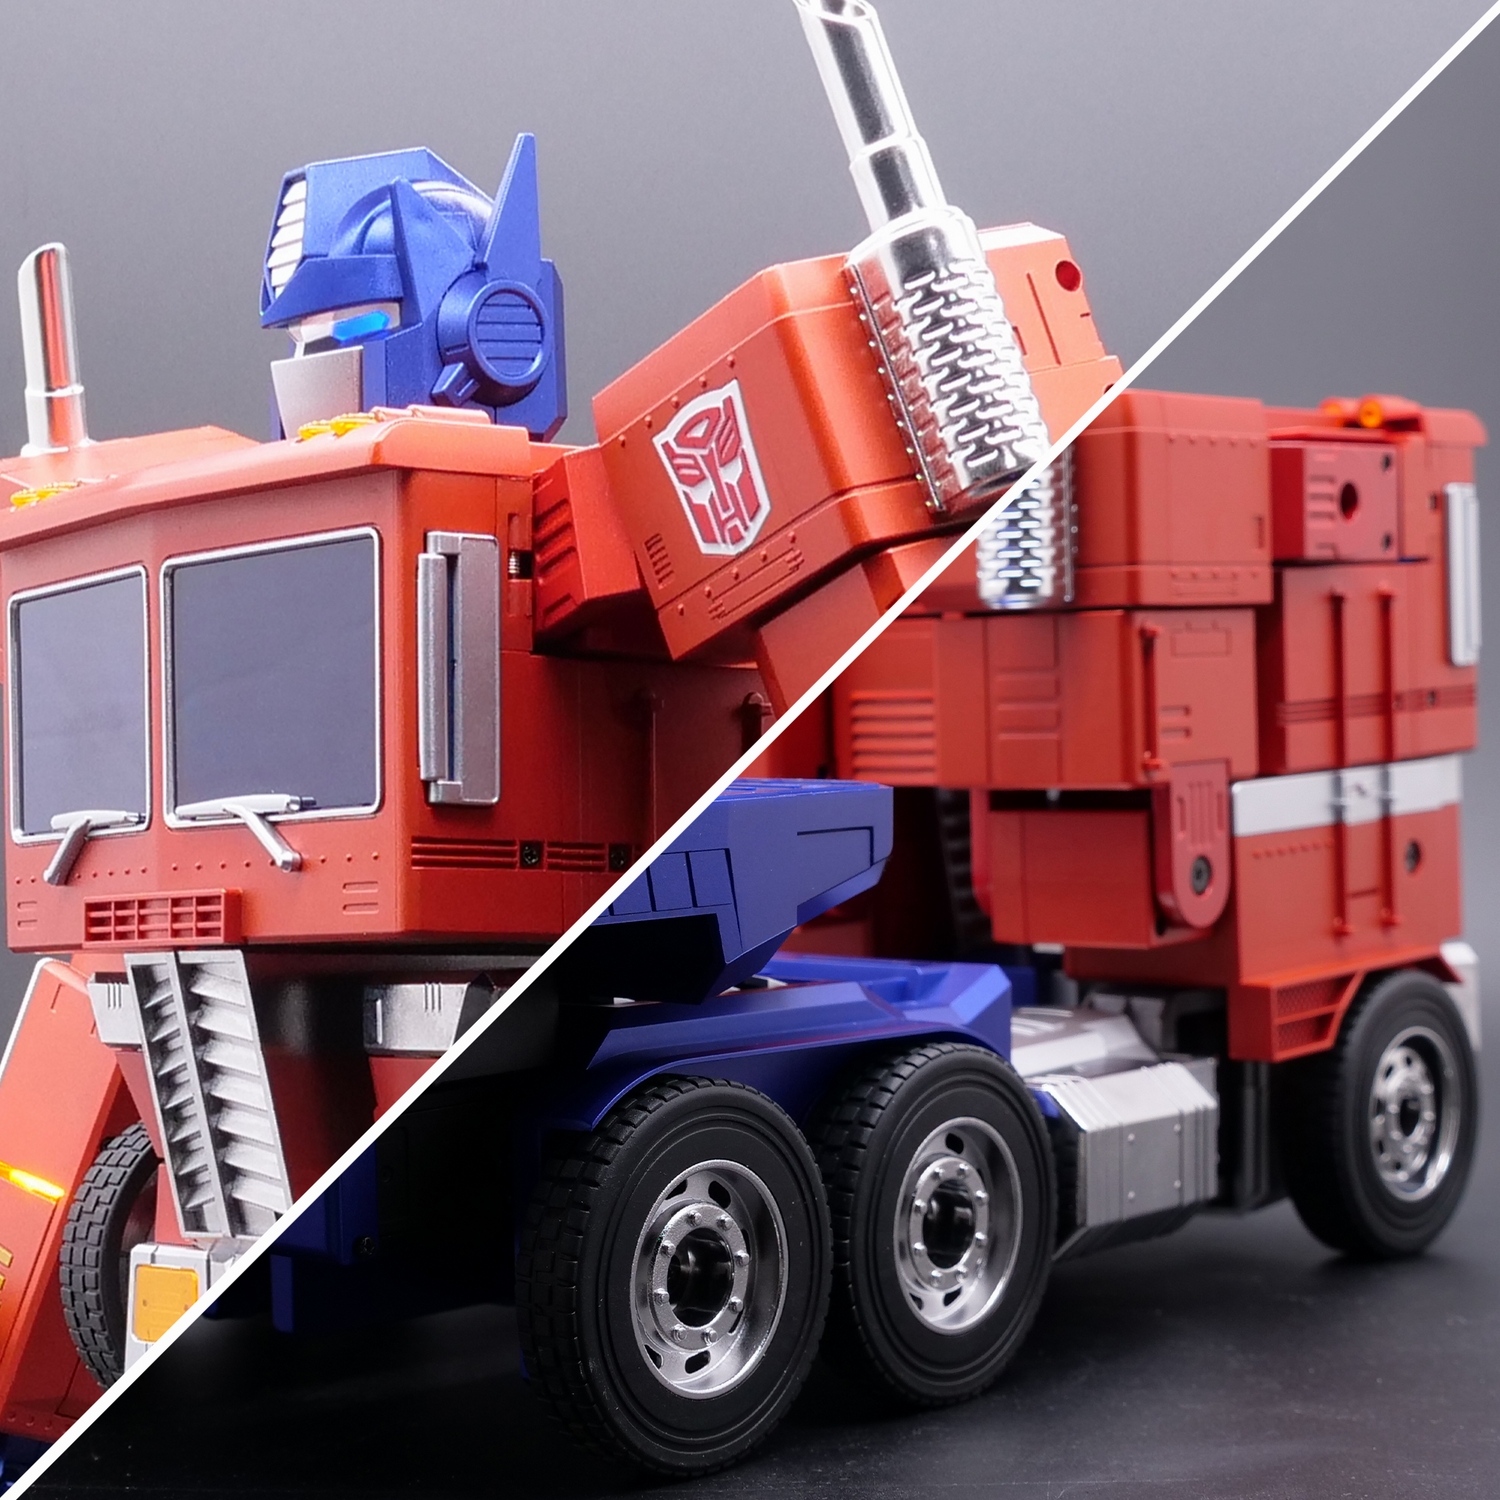 OP-truck-robot-conversion.jpg